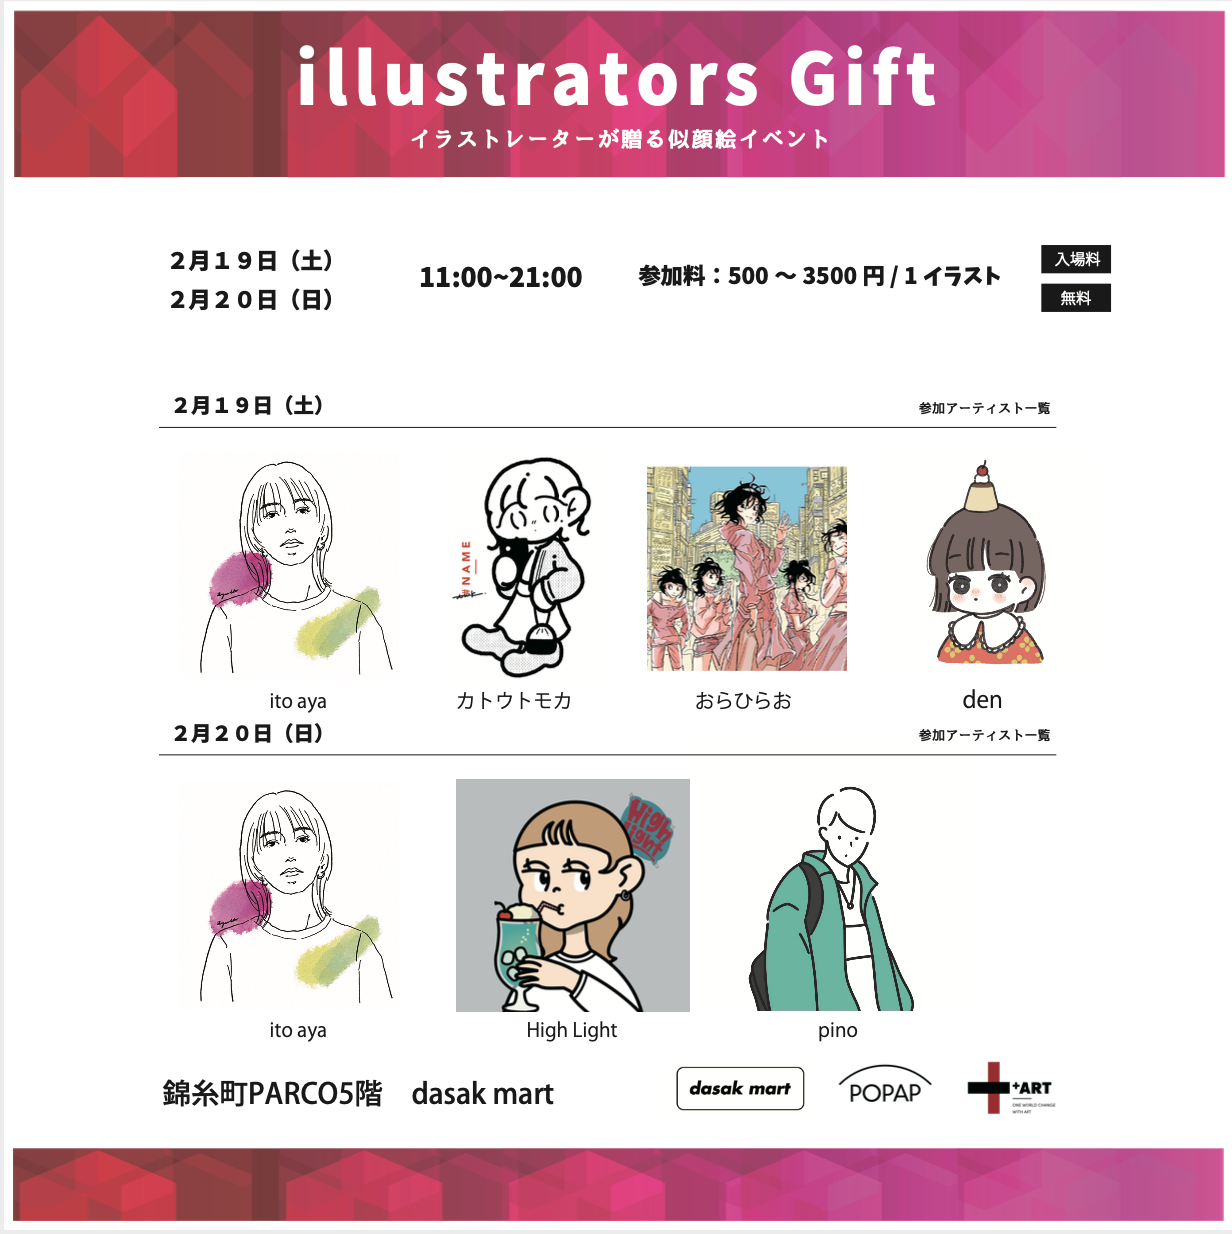 イラストレーターが贈る Illustrators Gift 2月19日 日の2日間 錦糸町parco 5f Dasak Mart にて開催 株式会社qutoriのプレスリリース